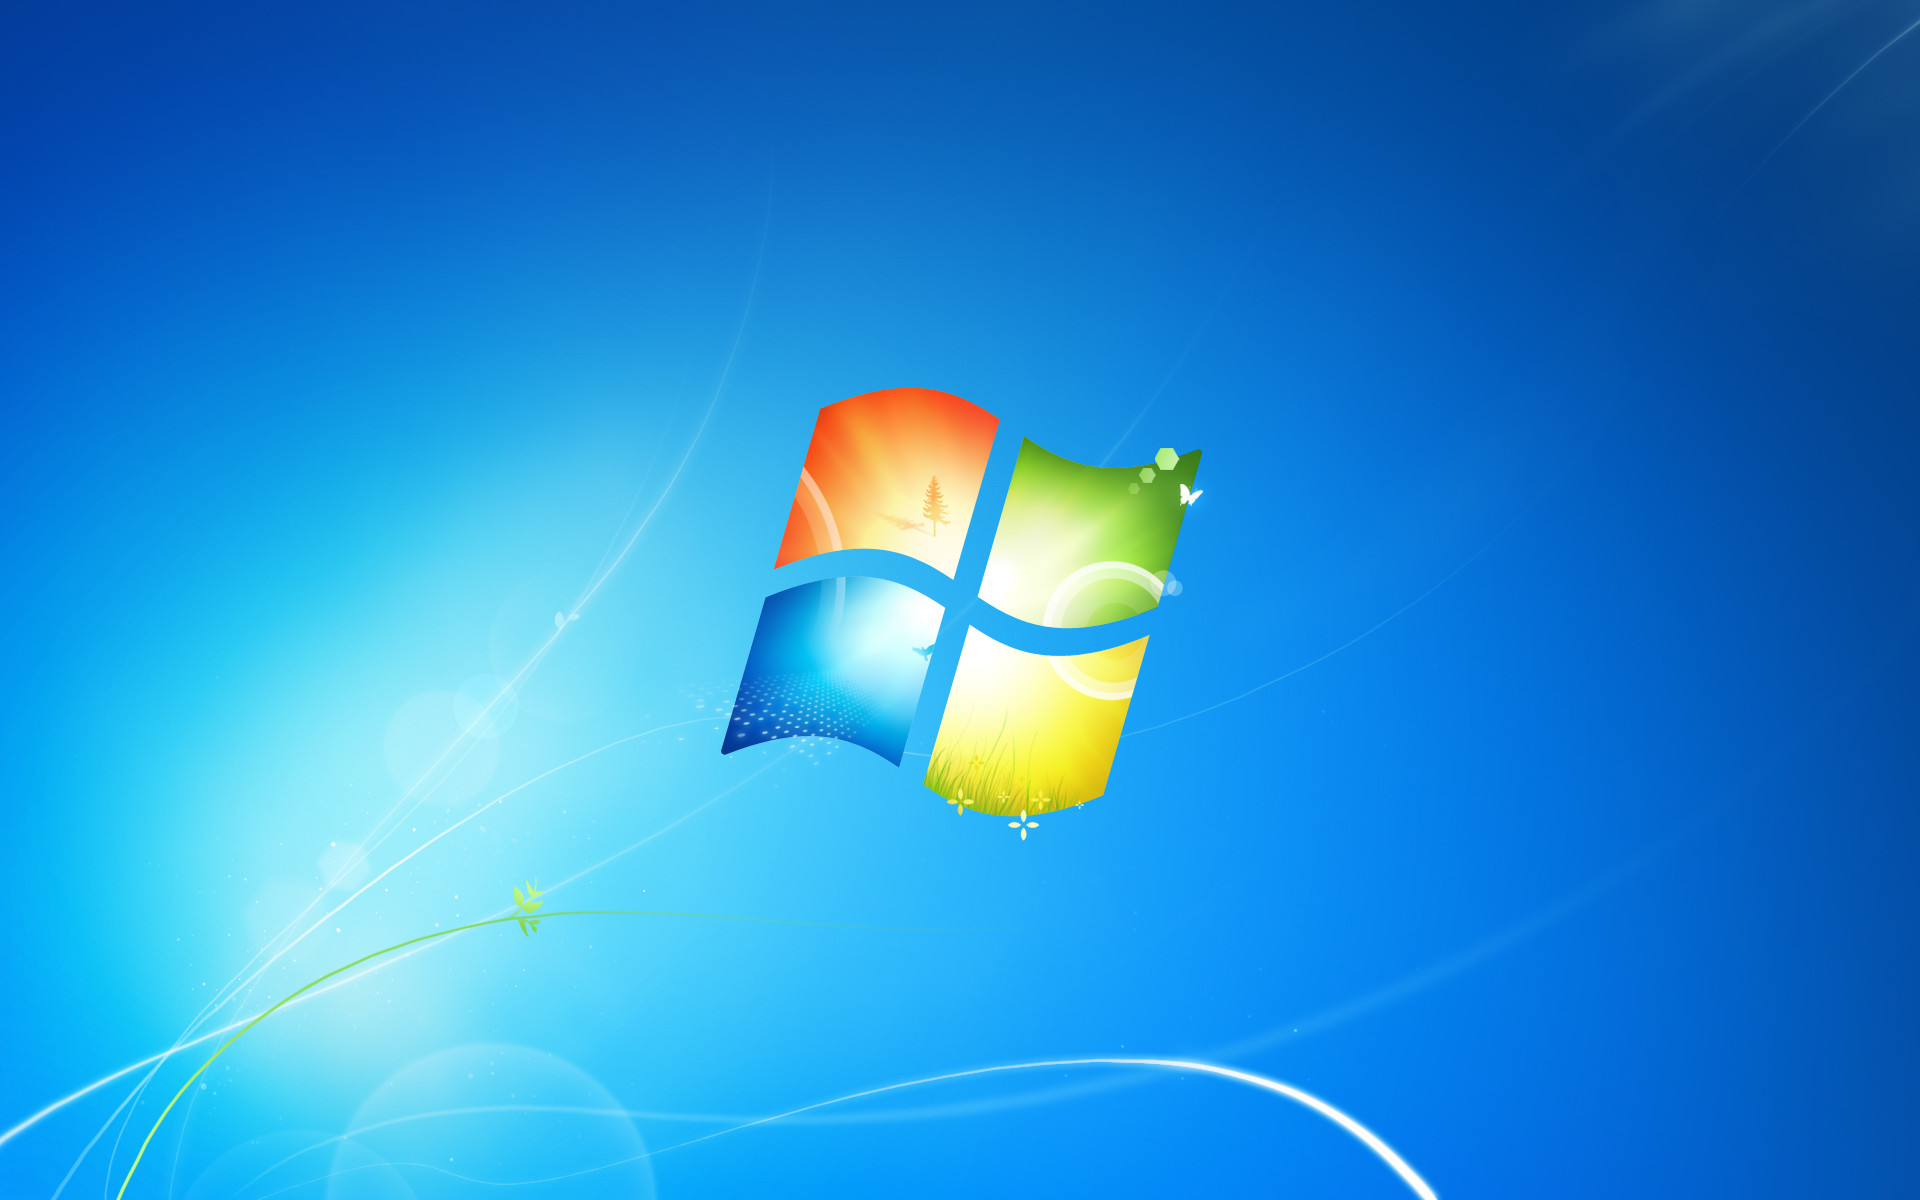 Windows 7 Desktop Backgrounds (71+ images)